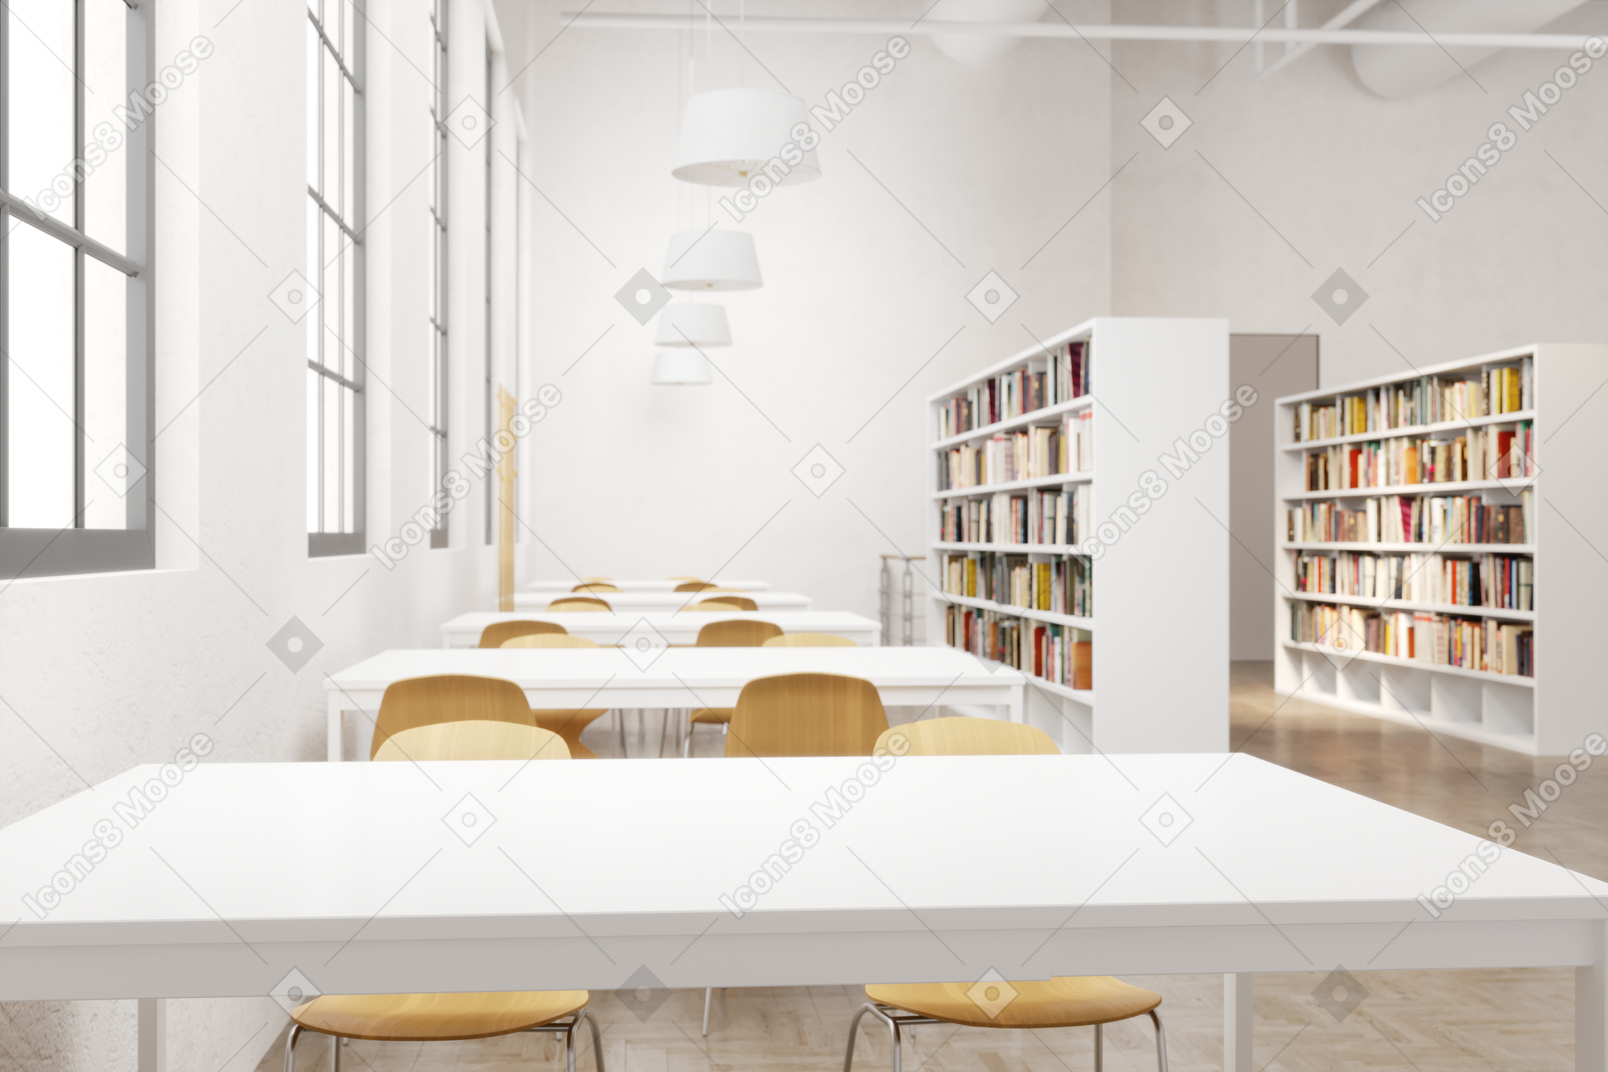 책상과 의자가 있는 현대적인 도서관